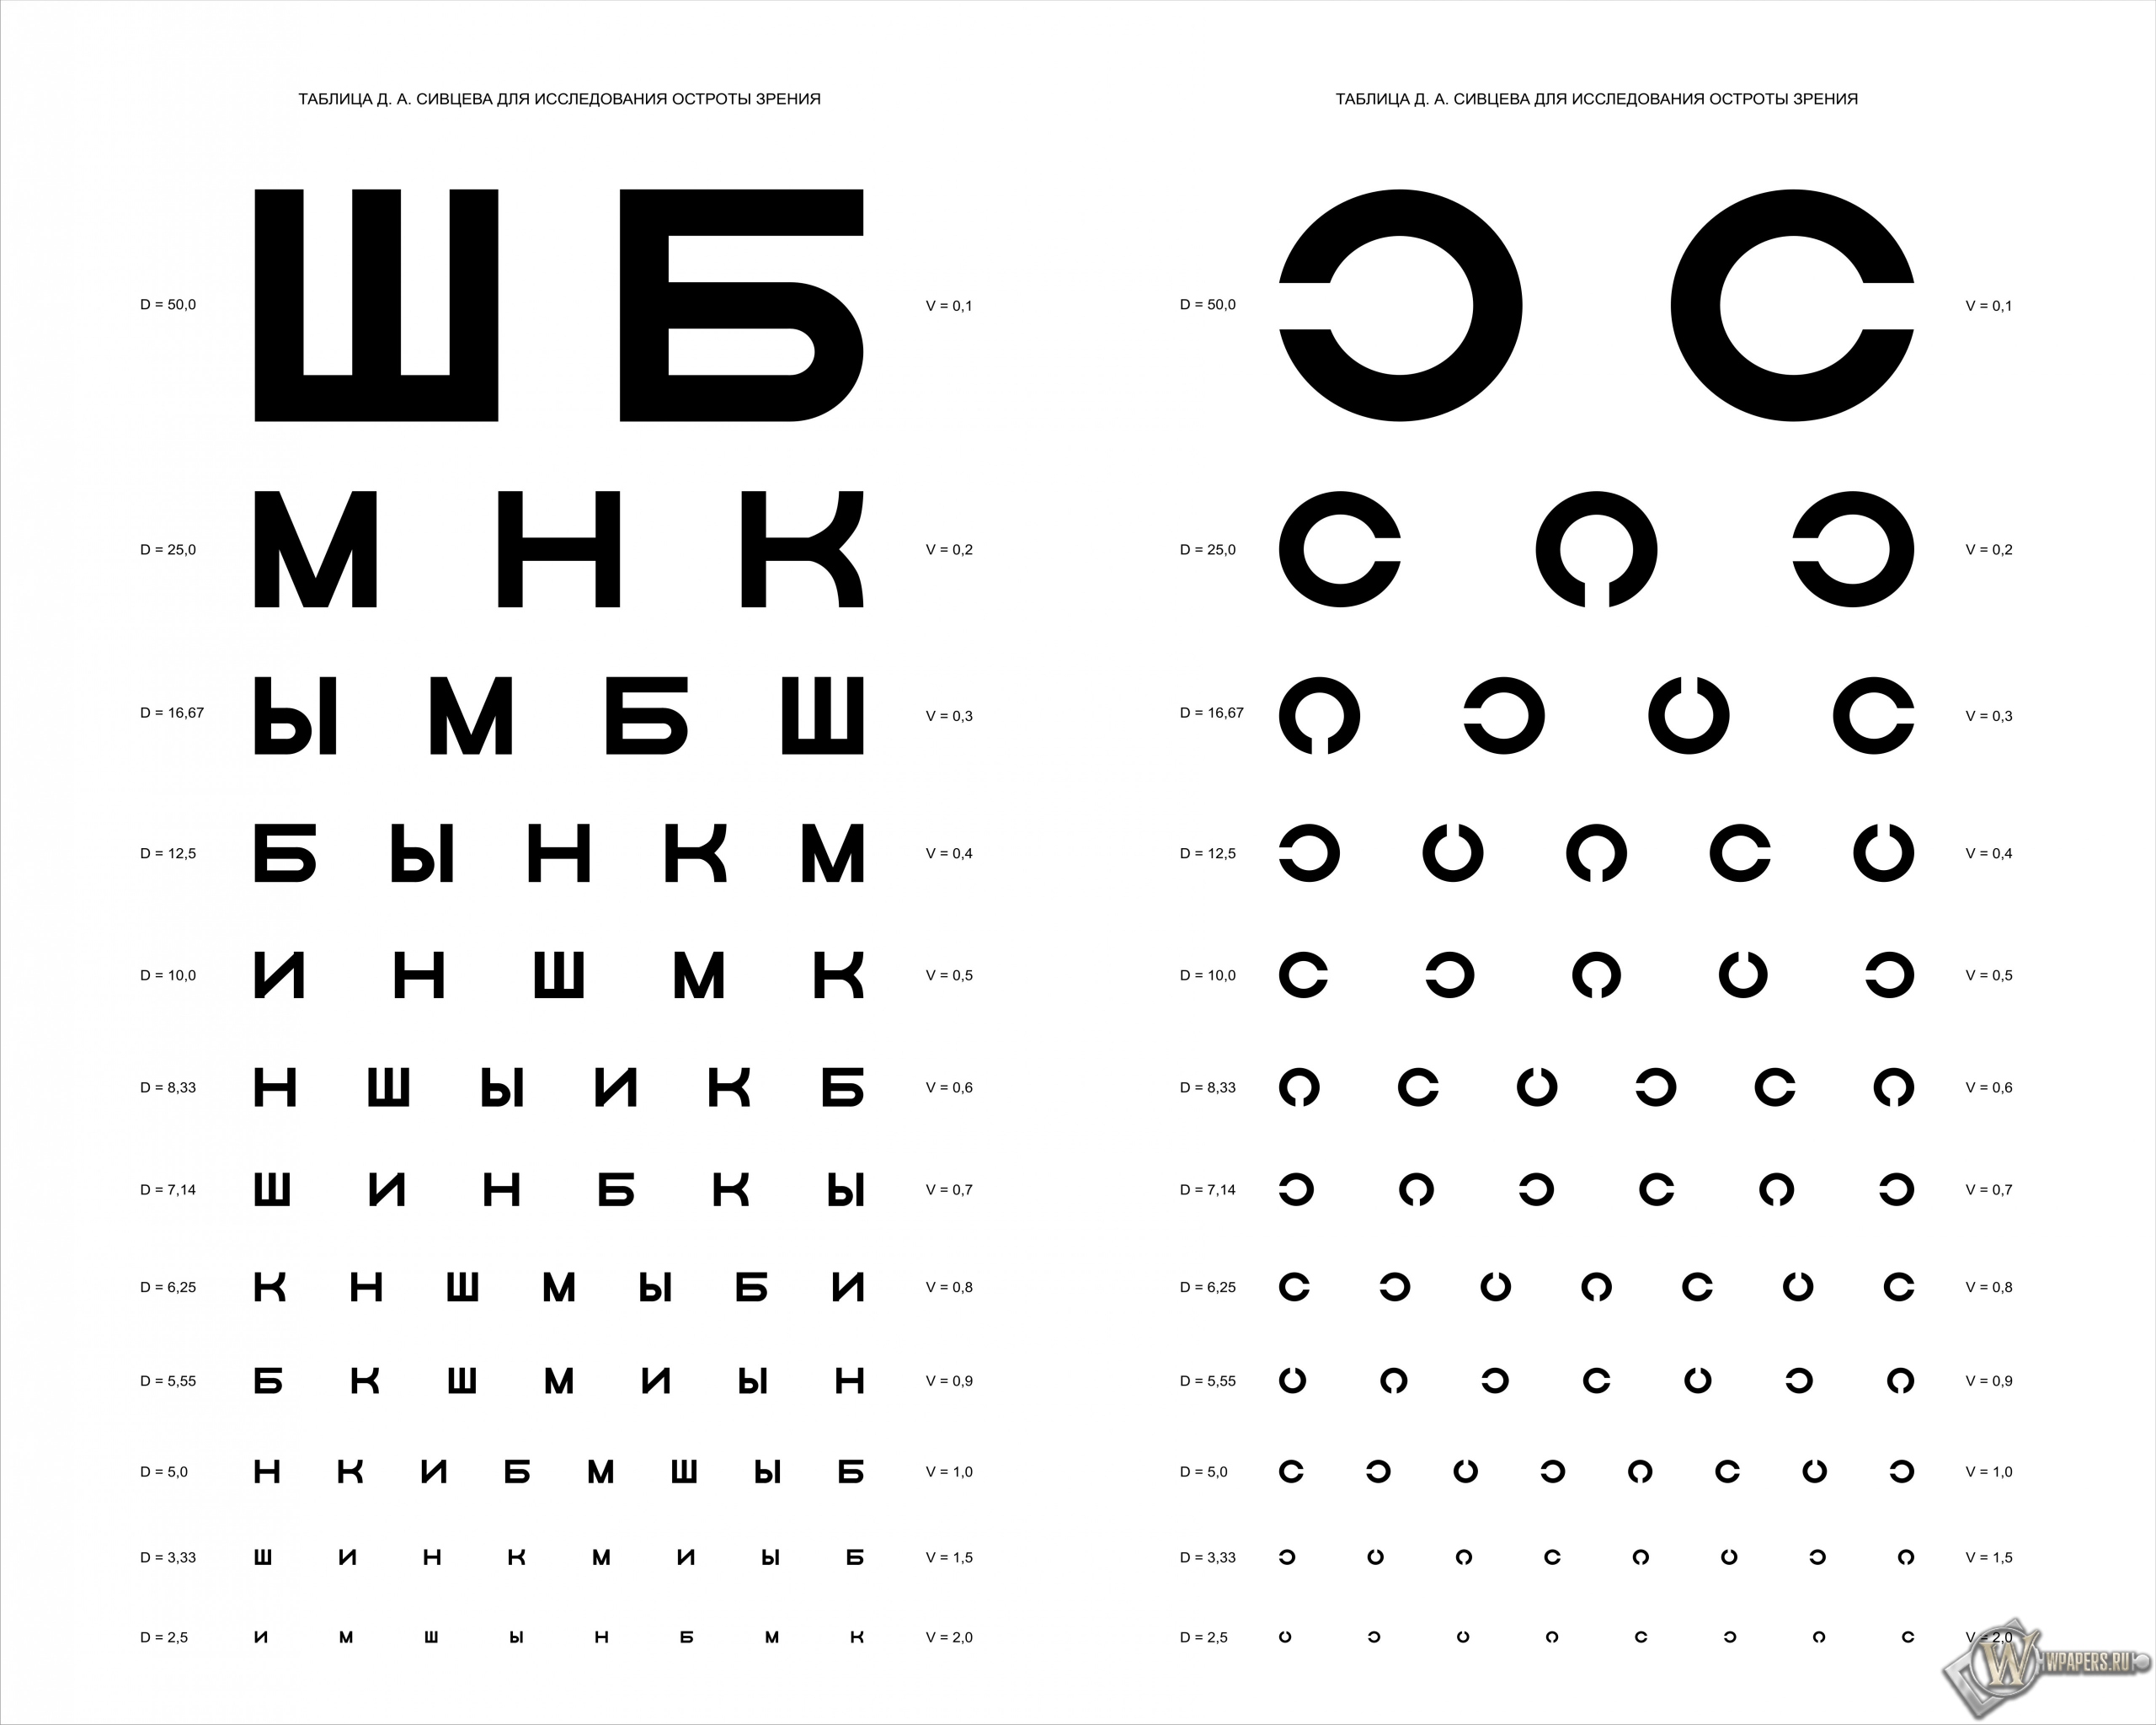 Таблица Д.А. Сивцева для проверки зрения 2560x2048